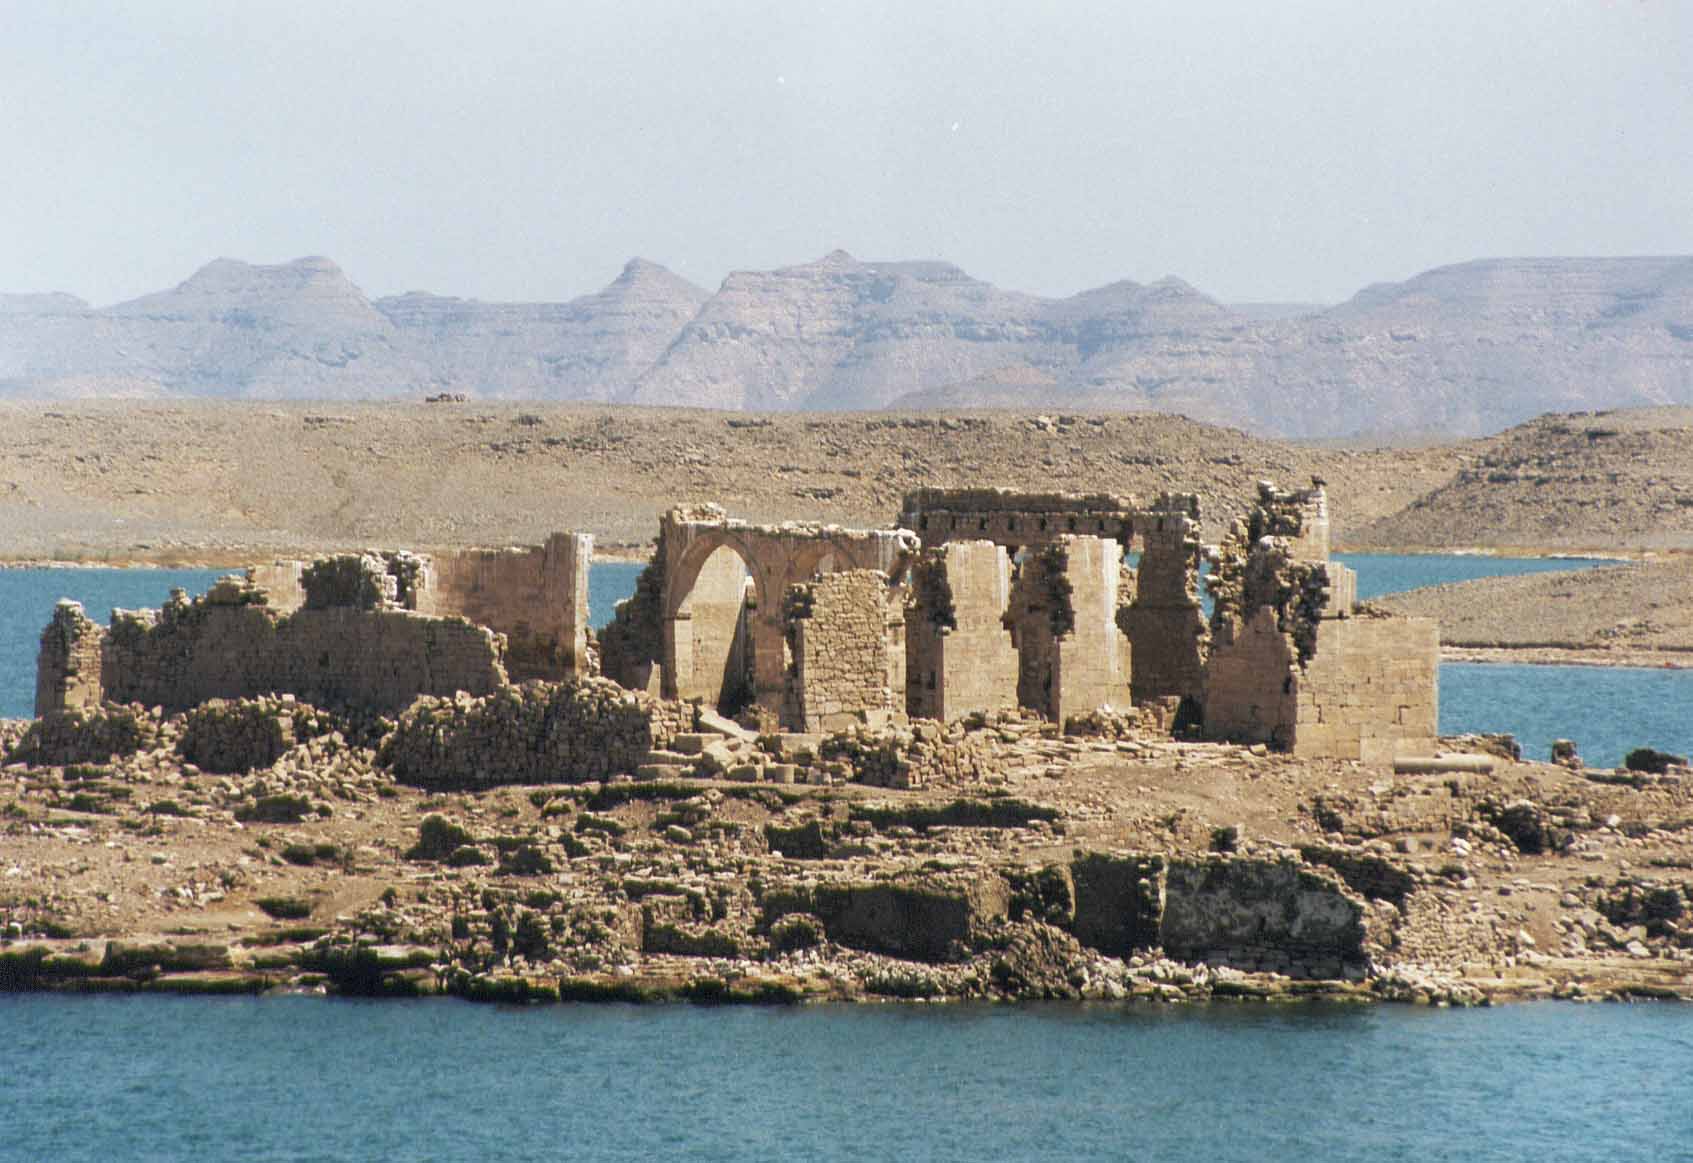 Egypt: Qasr Ibrim in ancient Nubia